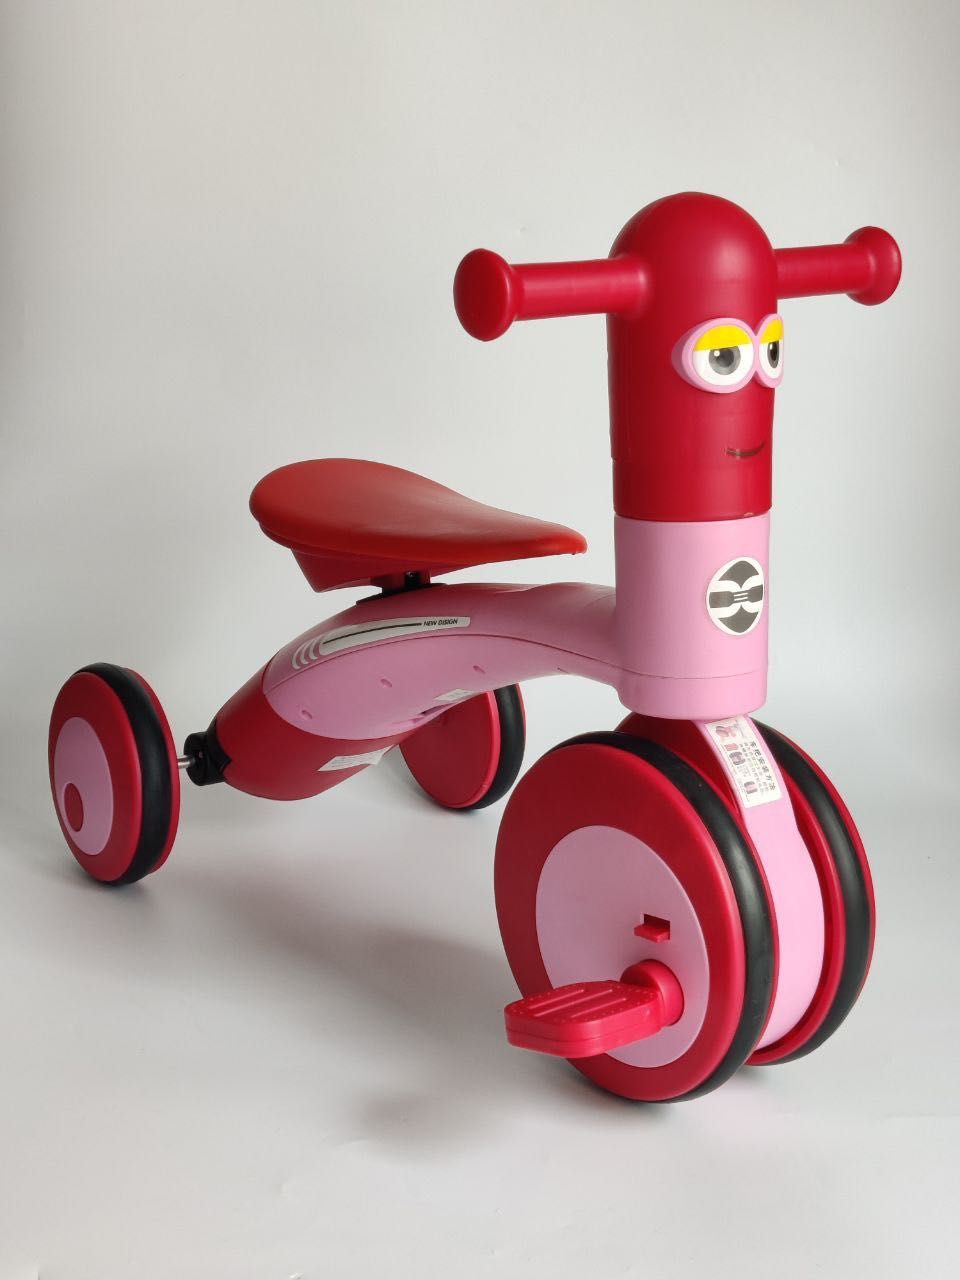 Детский велосипед беговел Minion XZ01 музыка + подстветка